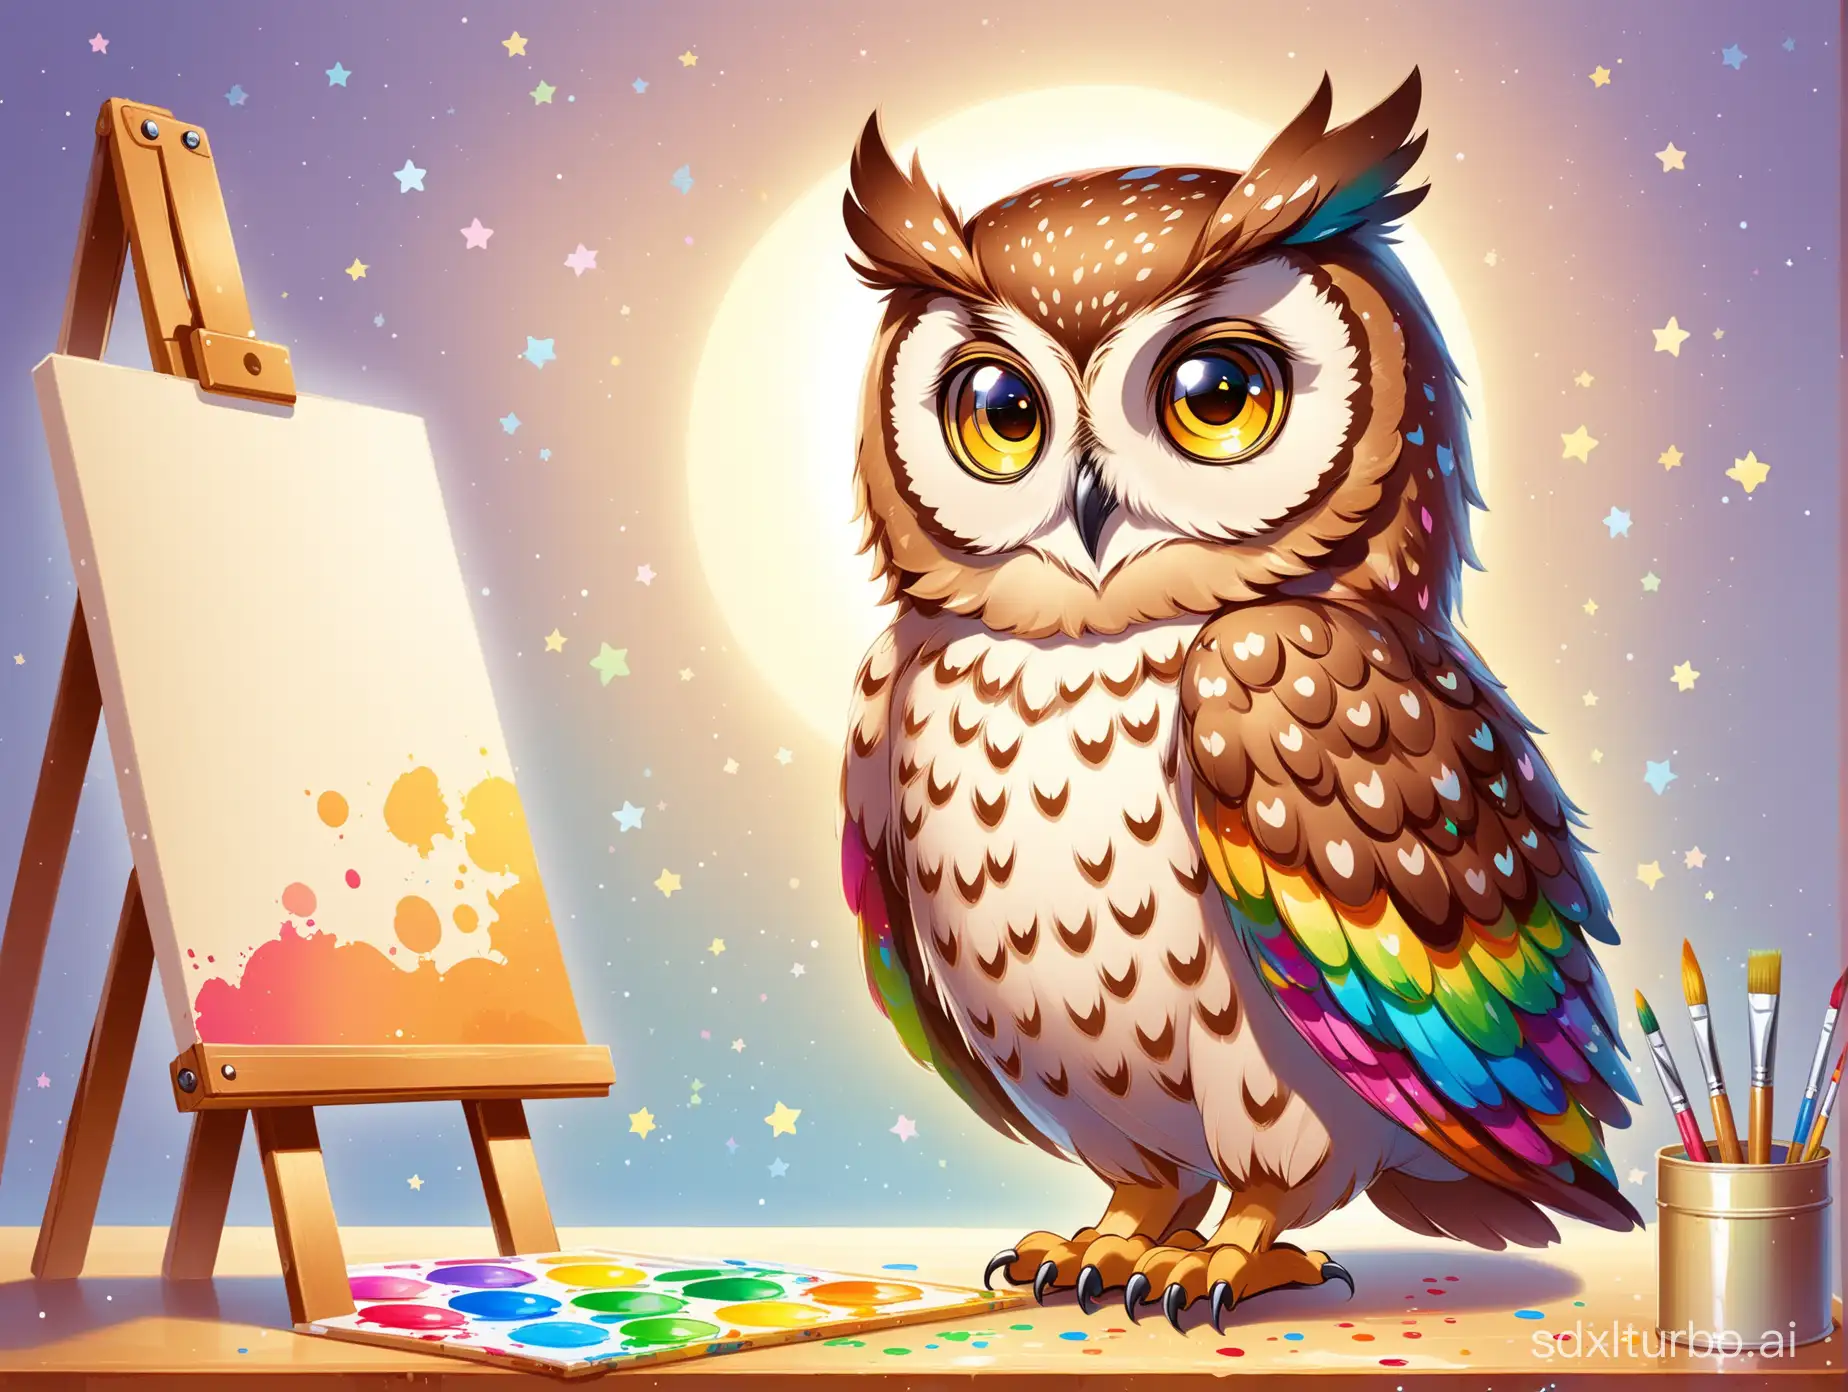 Whimsical-Painter-Owl-Inspires-Creativity-in-Children